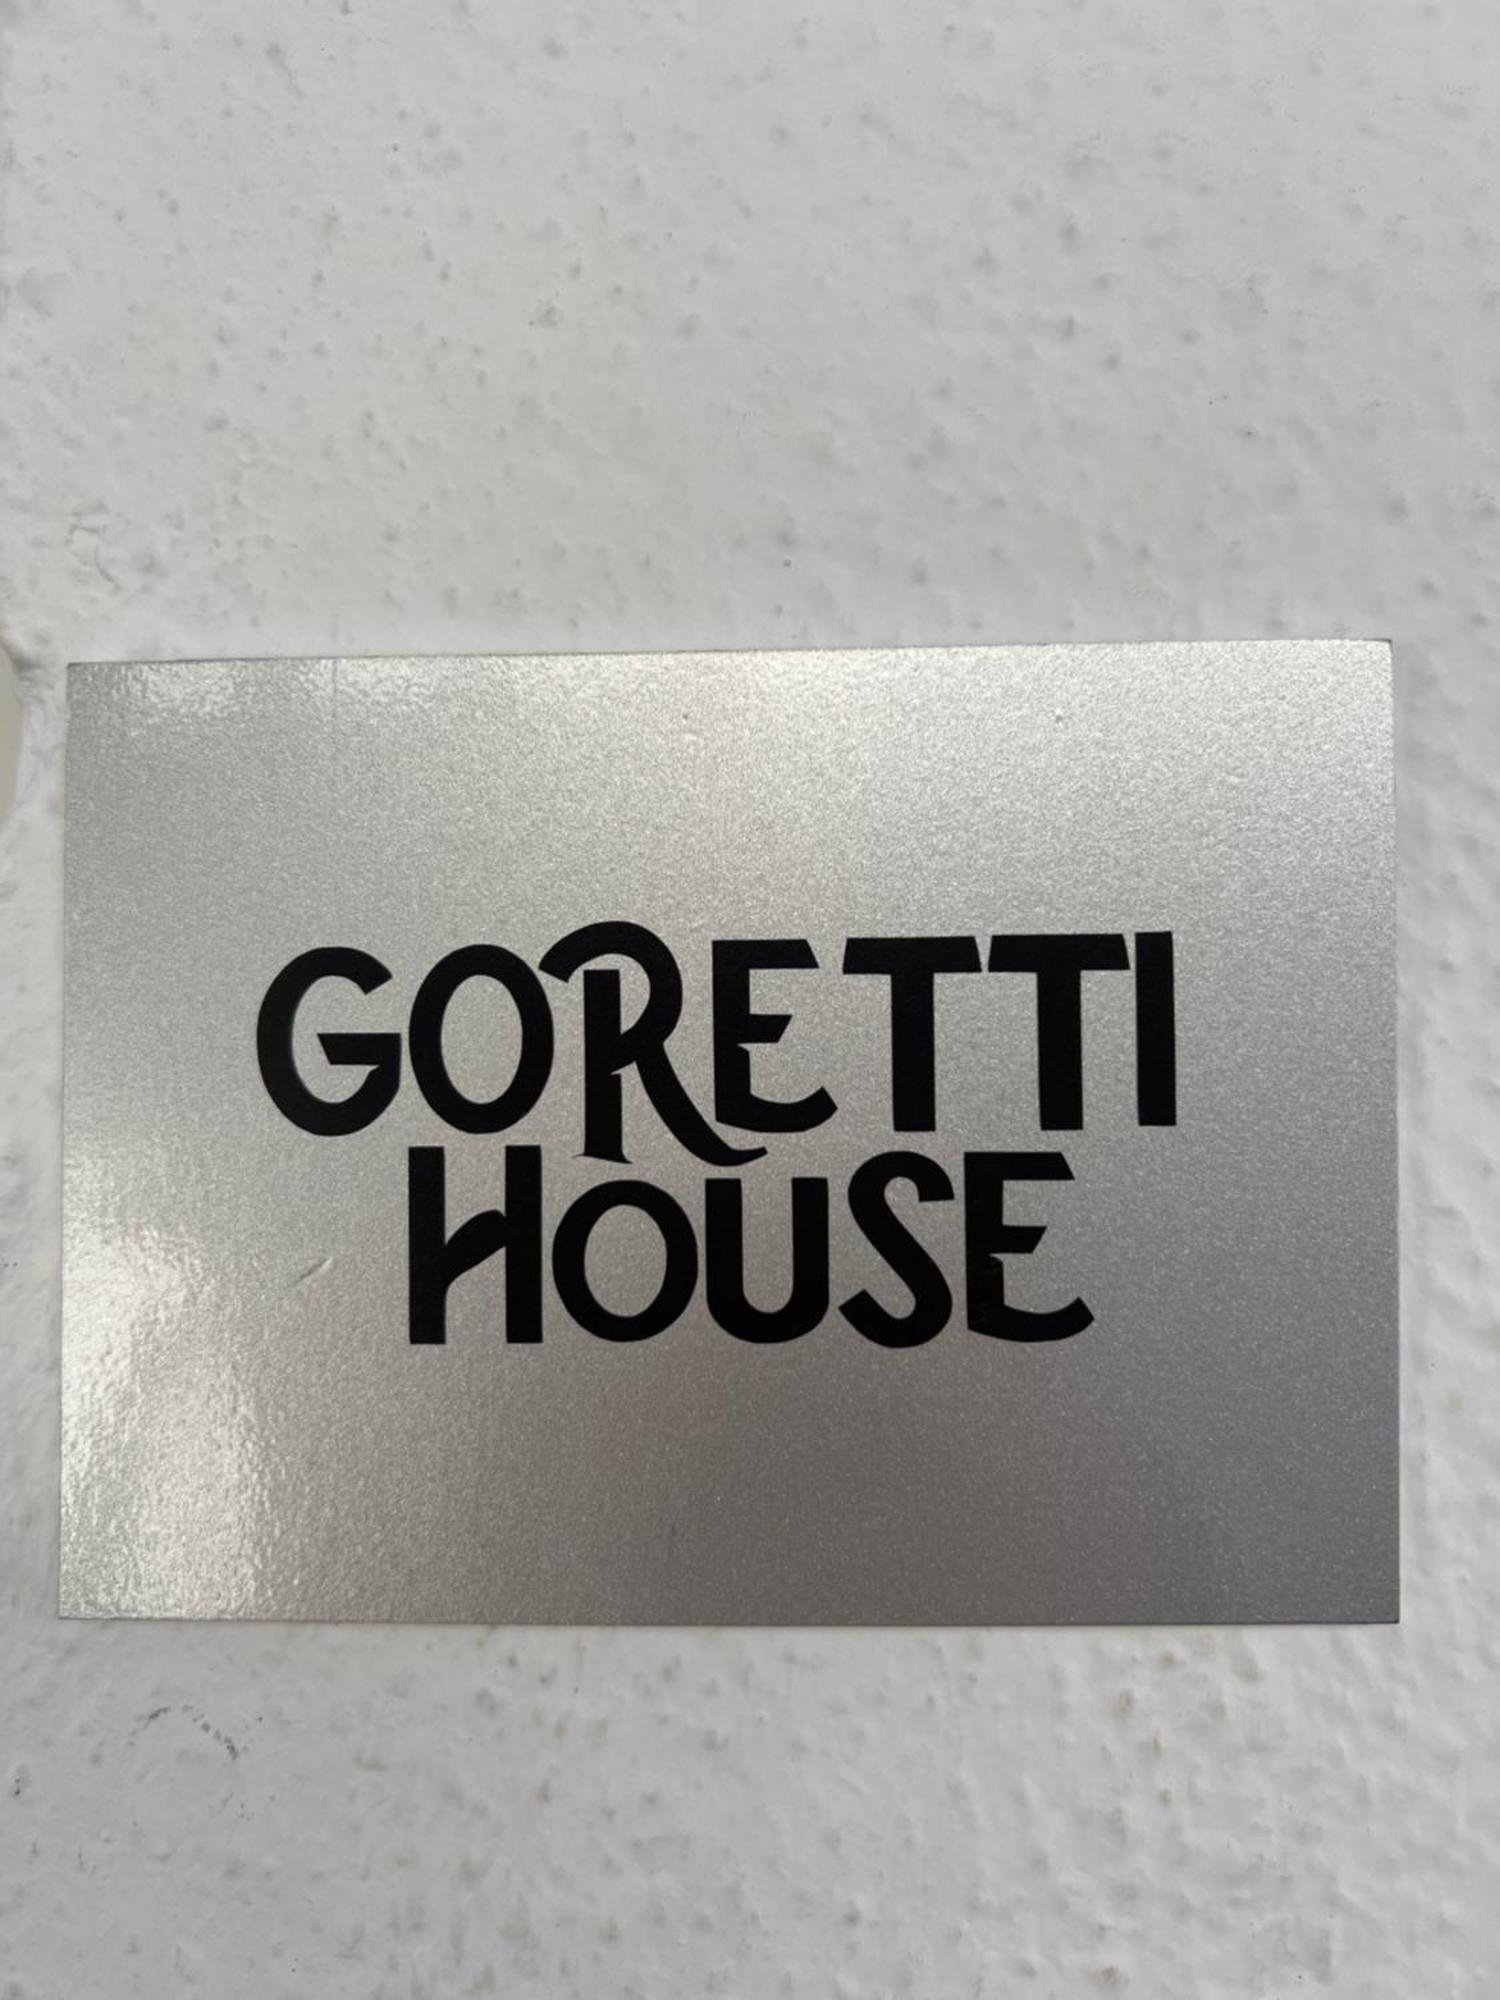 Gollum-Goretti House 梅里那德奥拉菲 外观 照片